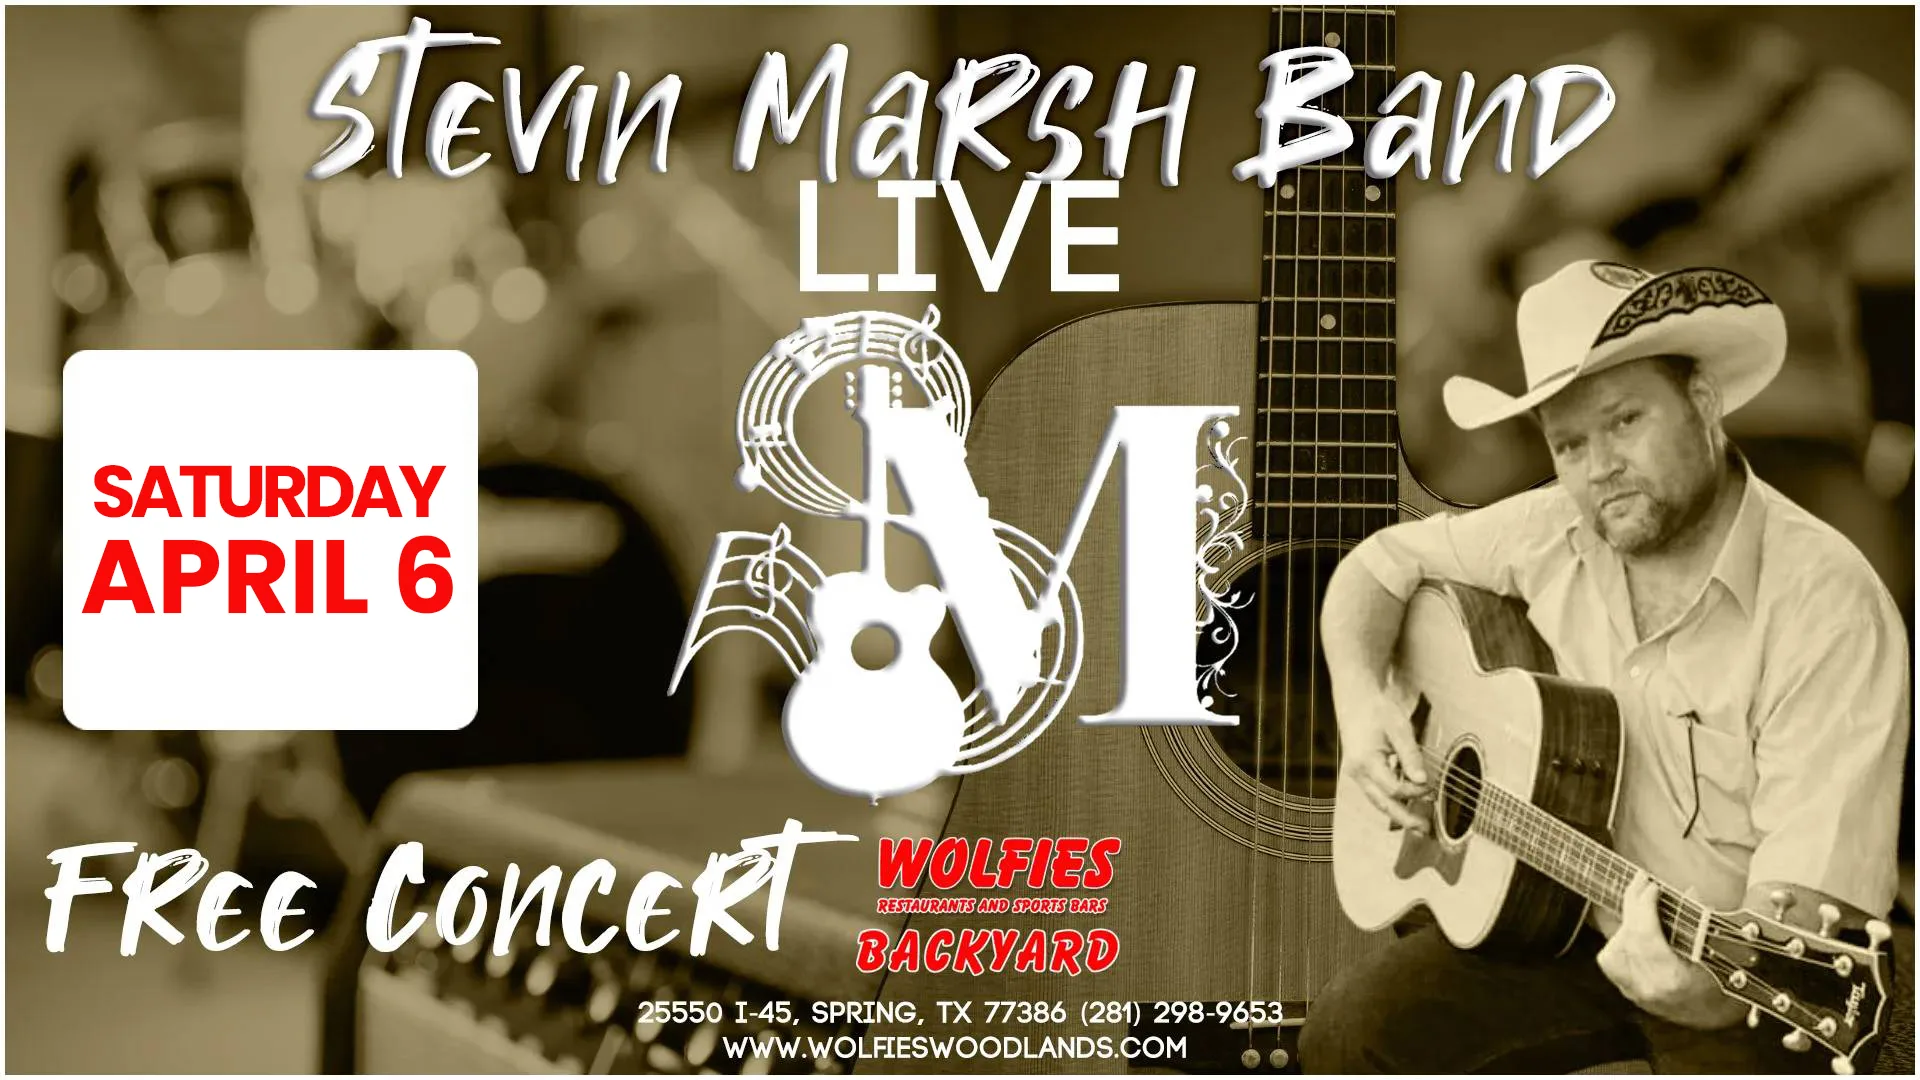 Stevin Marsh Band Live